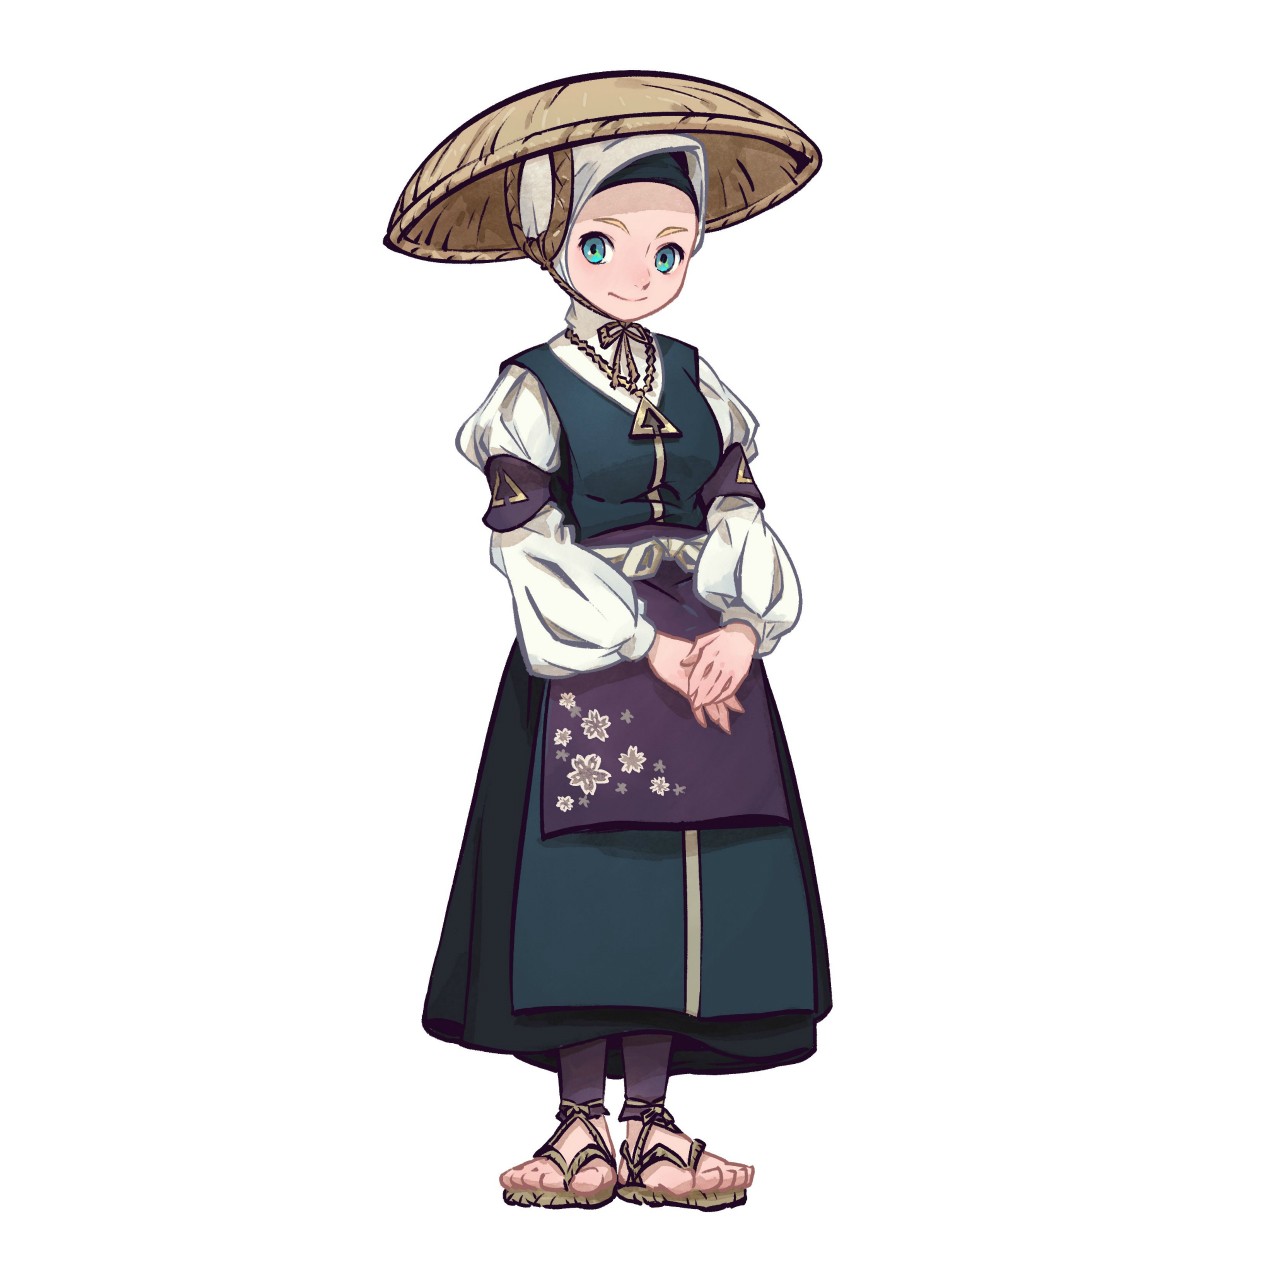 《天穗之咲稻姬》公開登場角色以及製作料理和種稻時所必須的農具